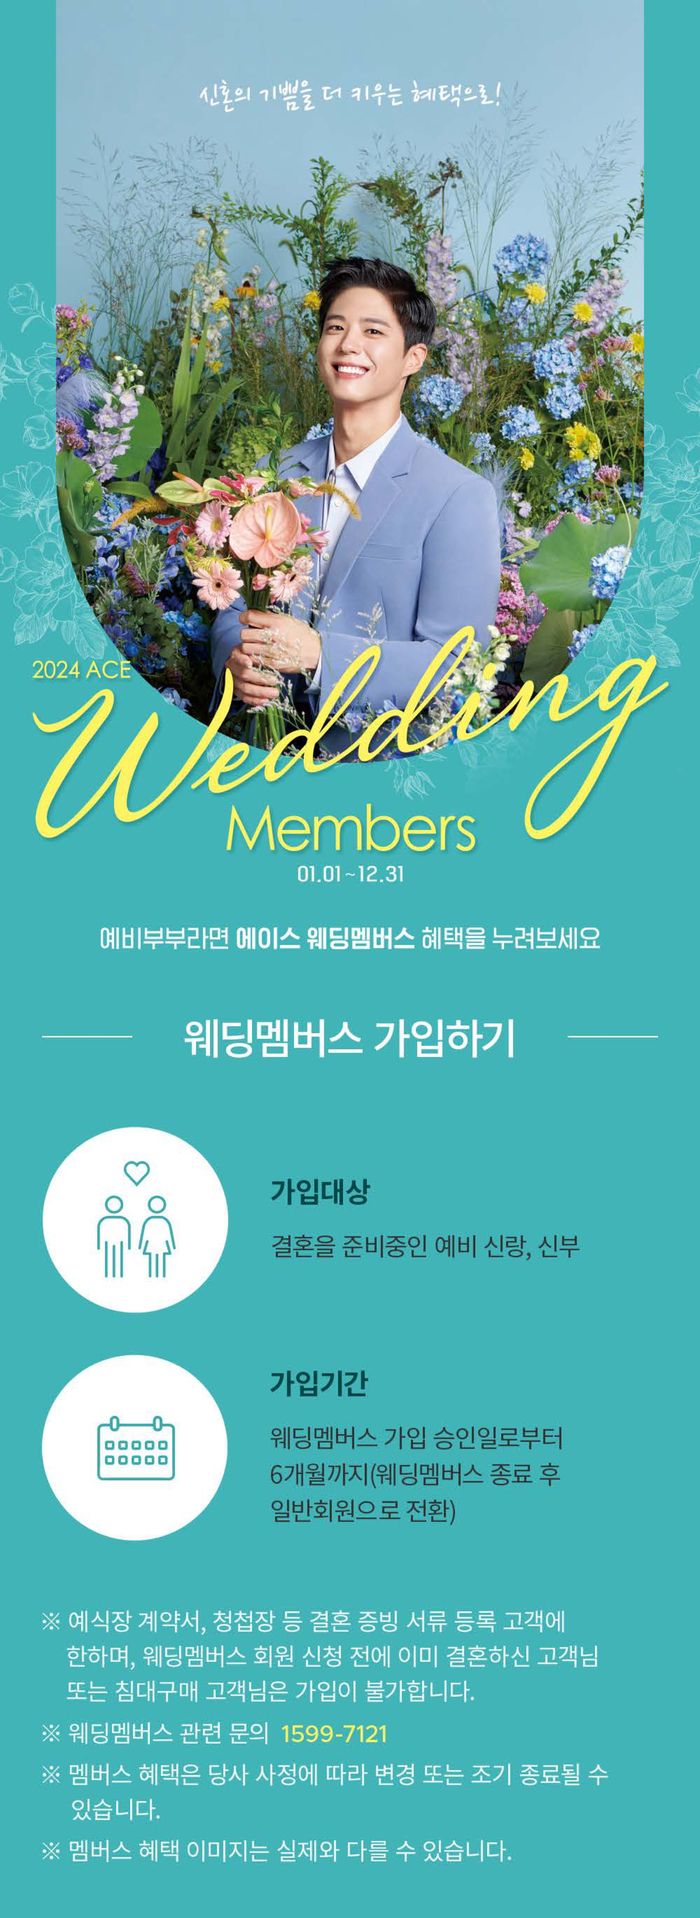 동대문구의 에이스침대 카탈로그 | Weeding Members | 2024. 1. 26. - 2024. 12. 31.